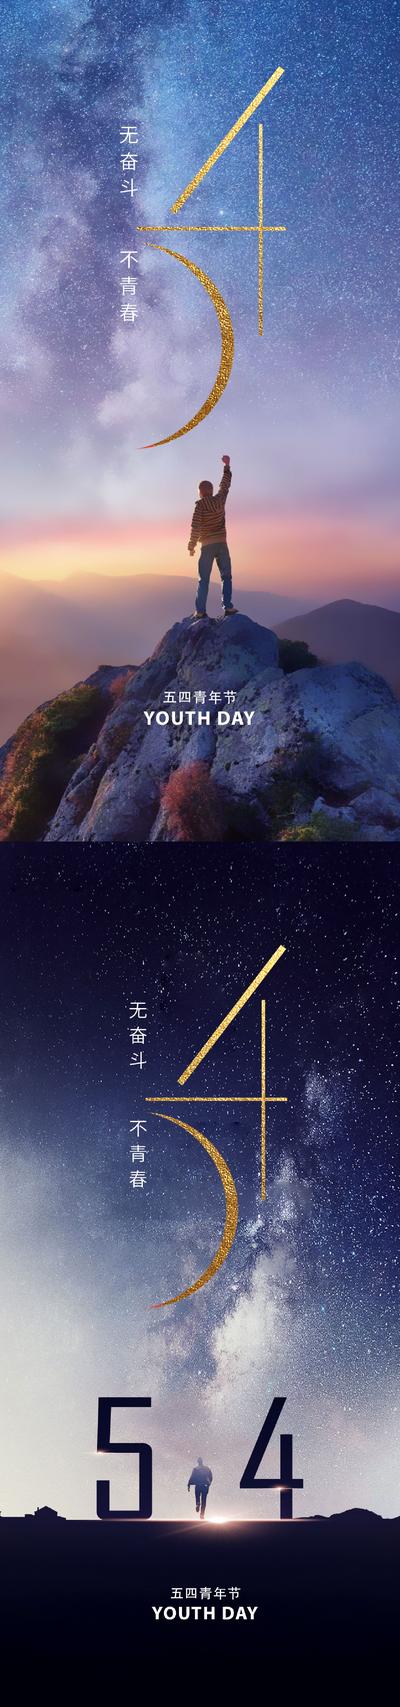 南门网 广告 海报 地产 青年节 人物 美业 五四 54 青年 剪影 登高 夜空 星空 宏大 大气 恢弘 高级